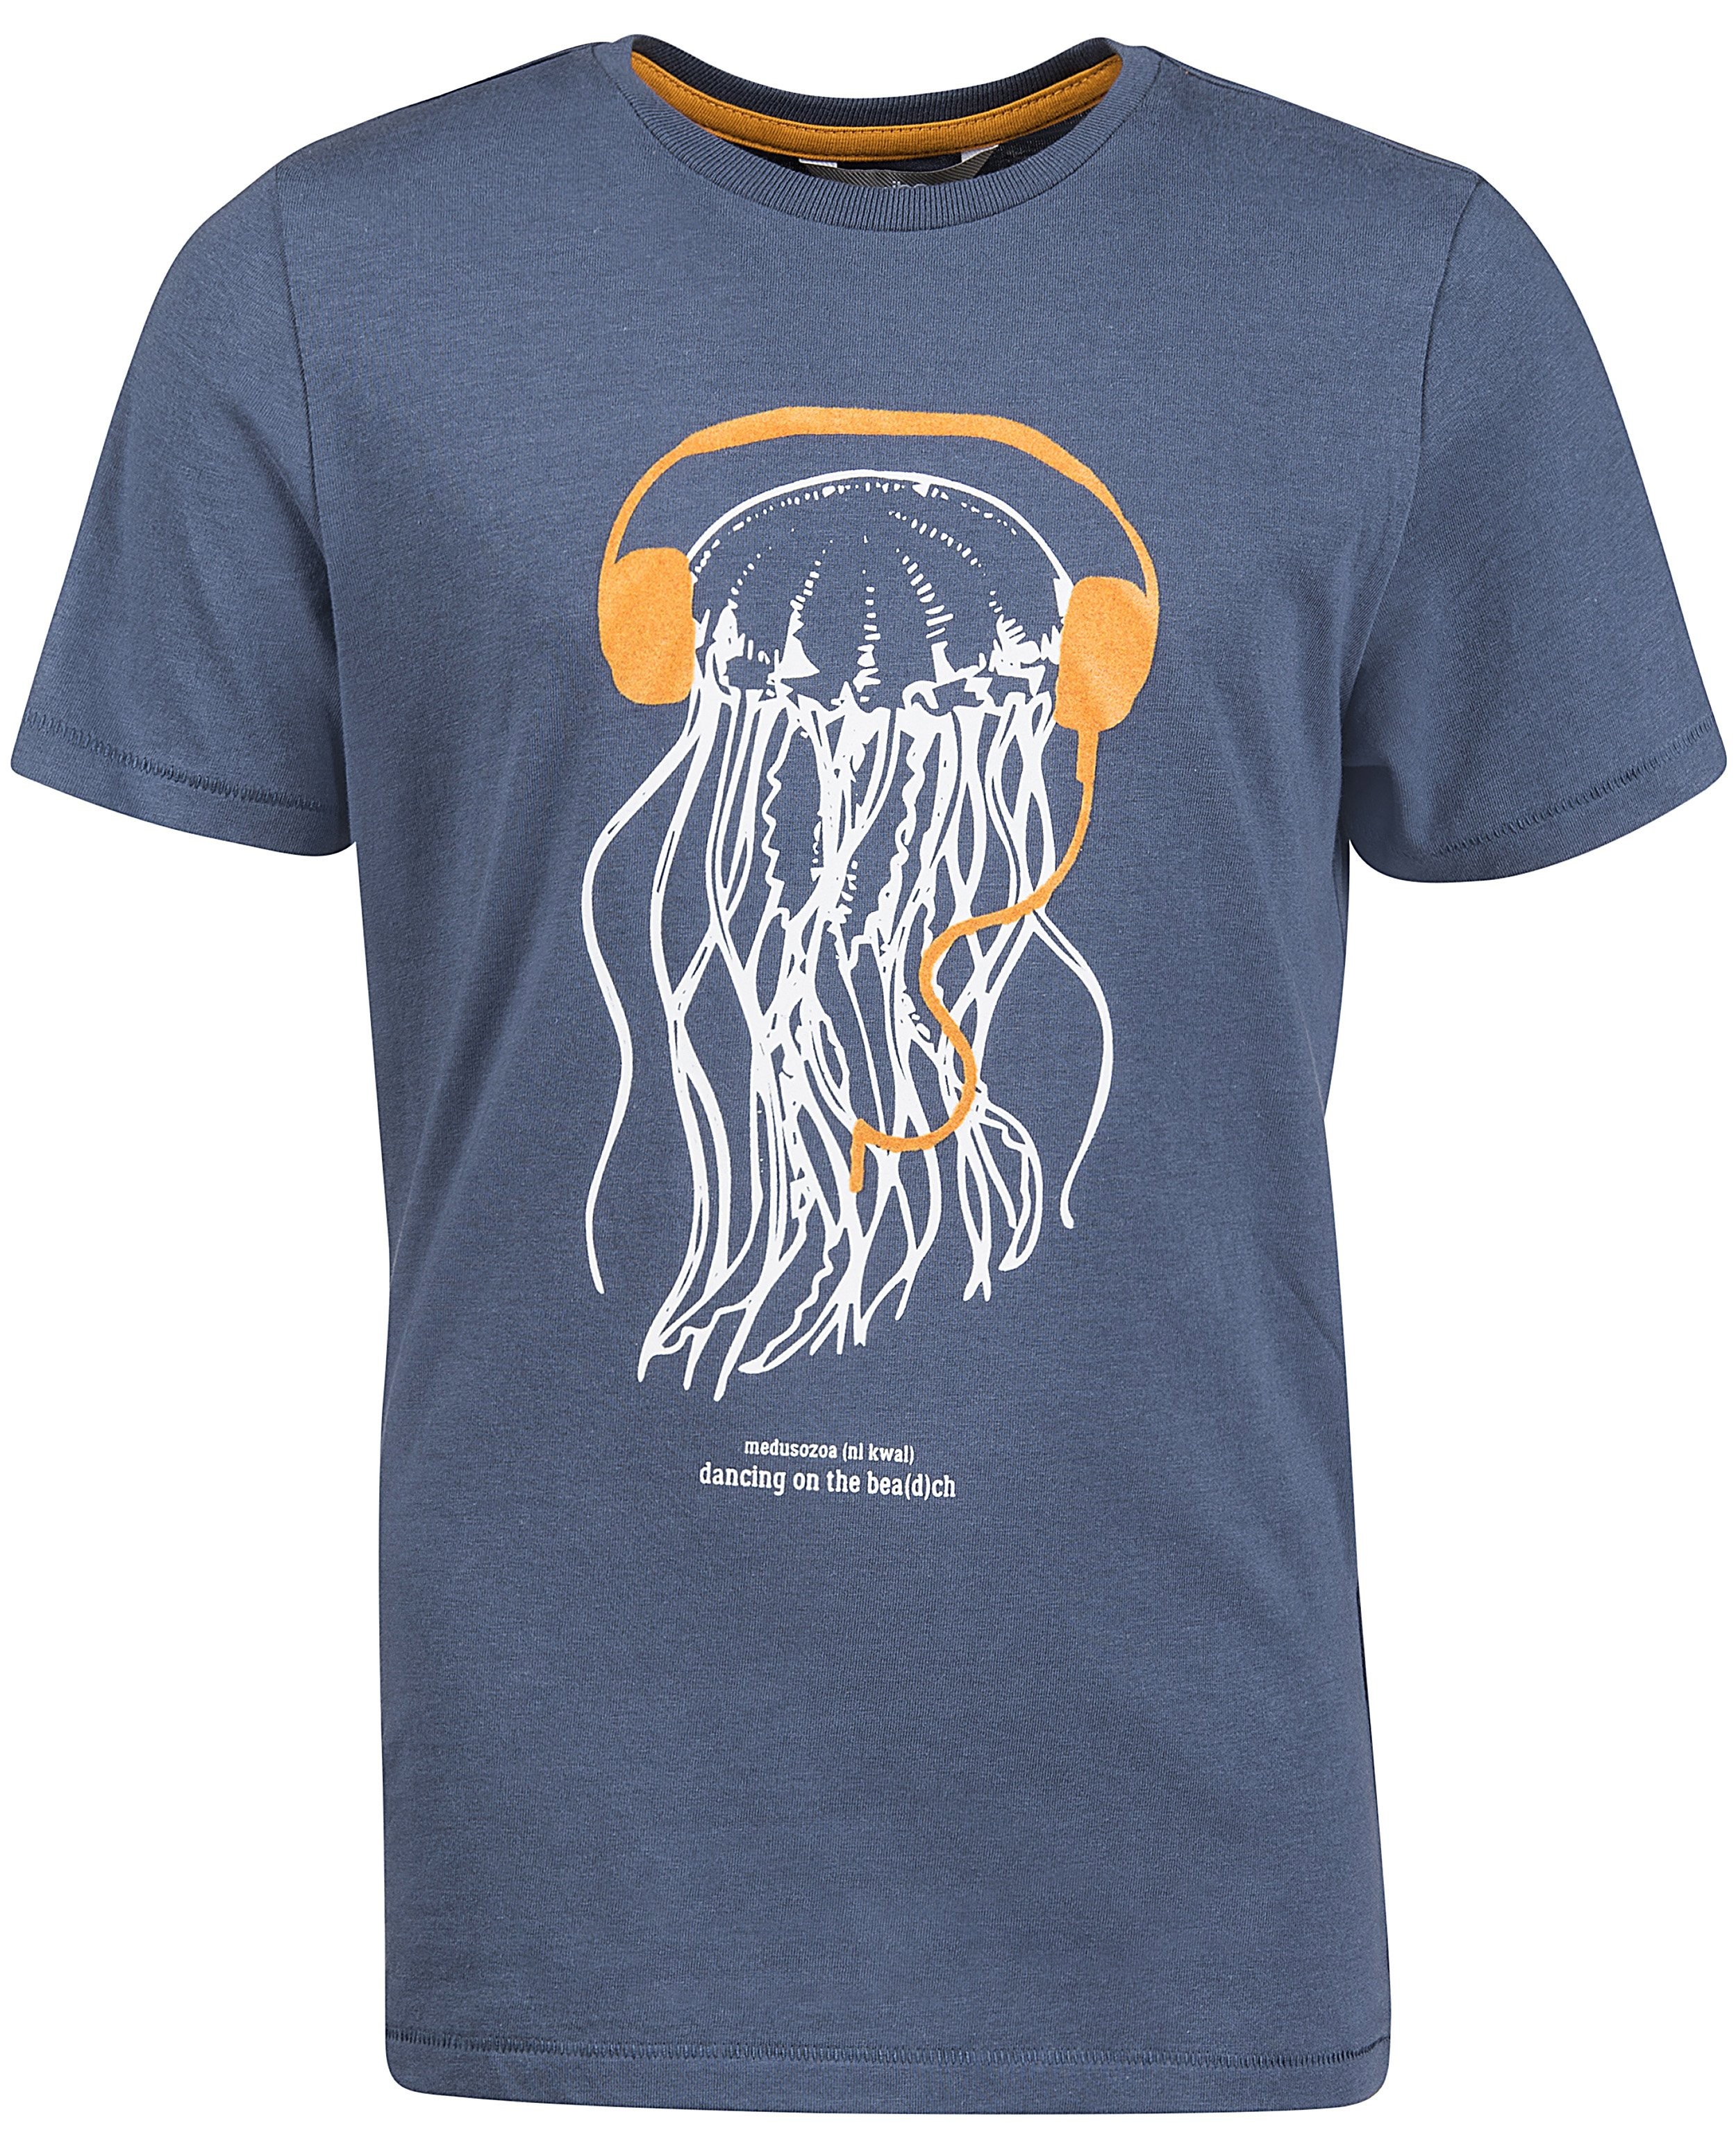 T-shirts - Blauwgrijs T-shirt